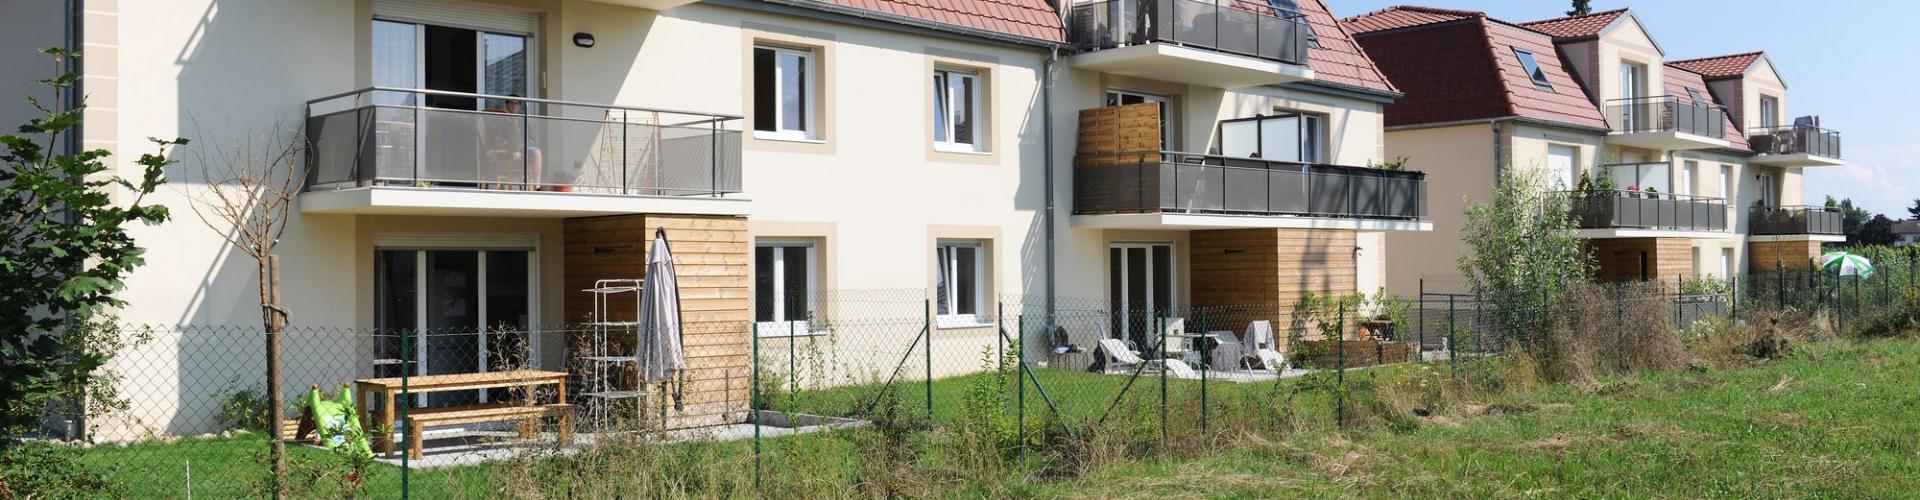 Programme immobilier neuf Le Clos des Sarments - Ingersheim